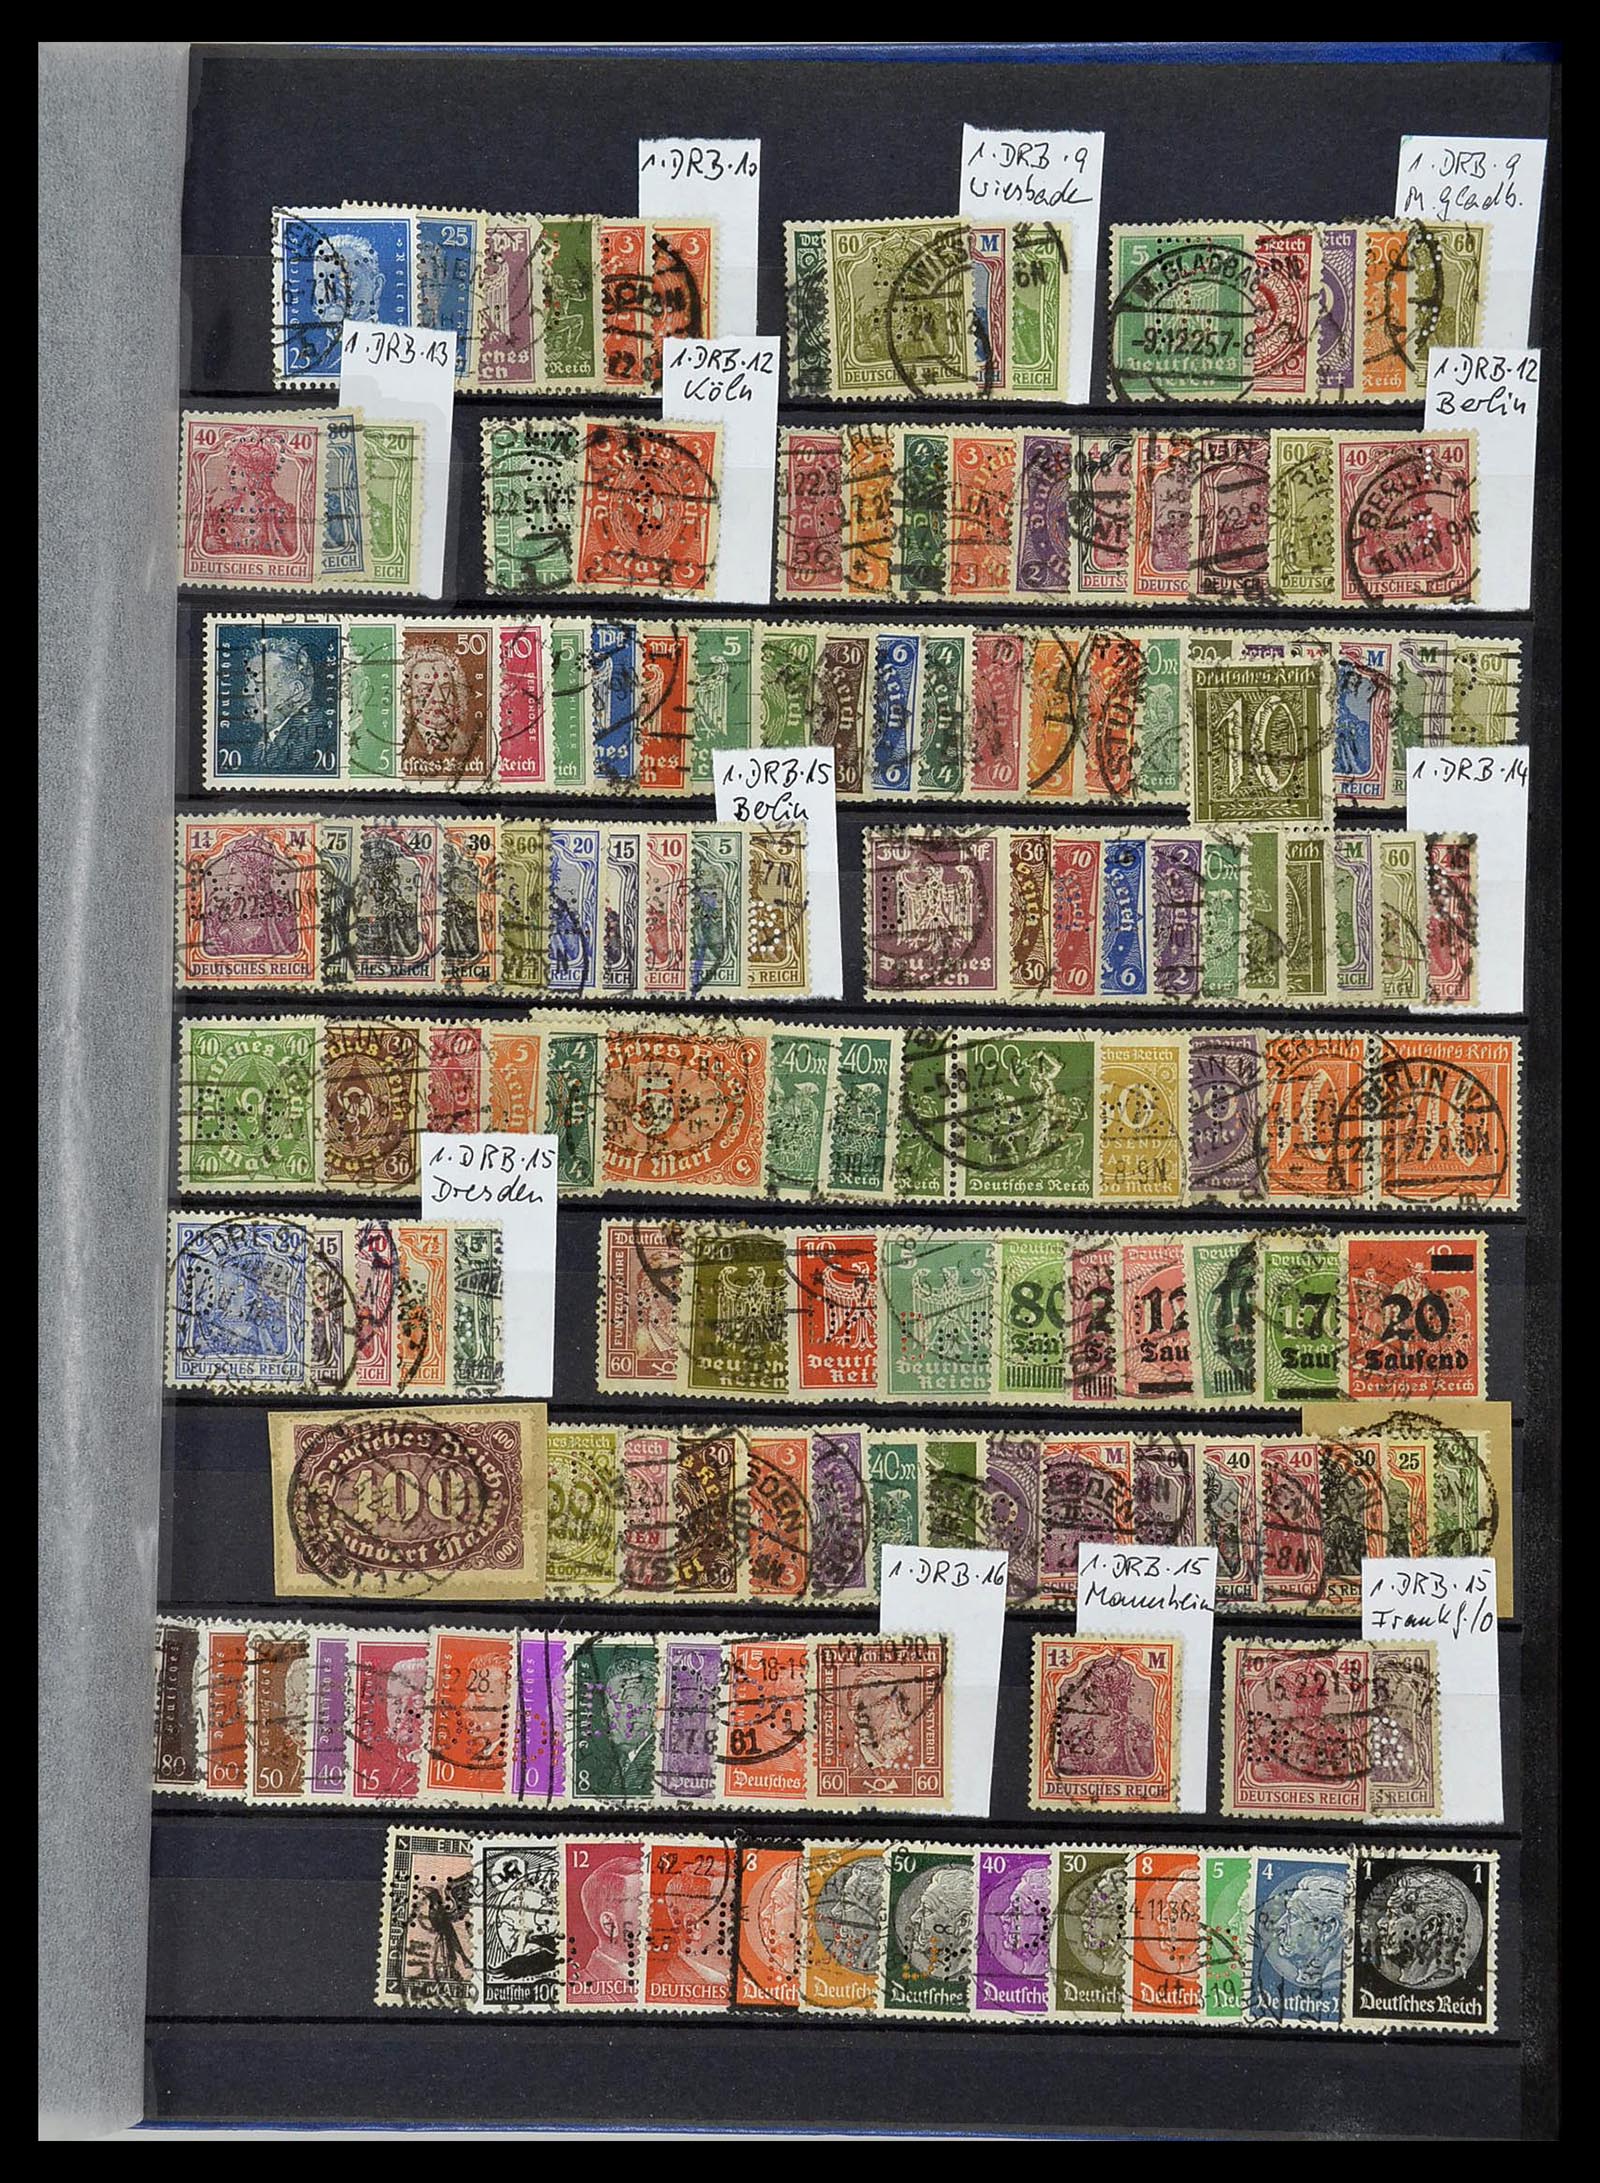 34432 102 - Stamp Collection 34432 German Reich perfins 1900-1933.